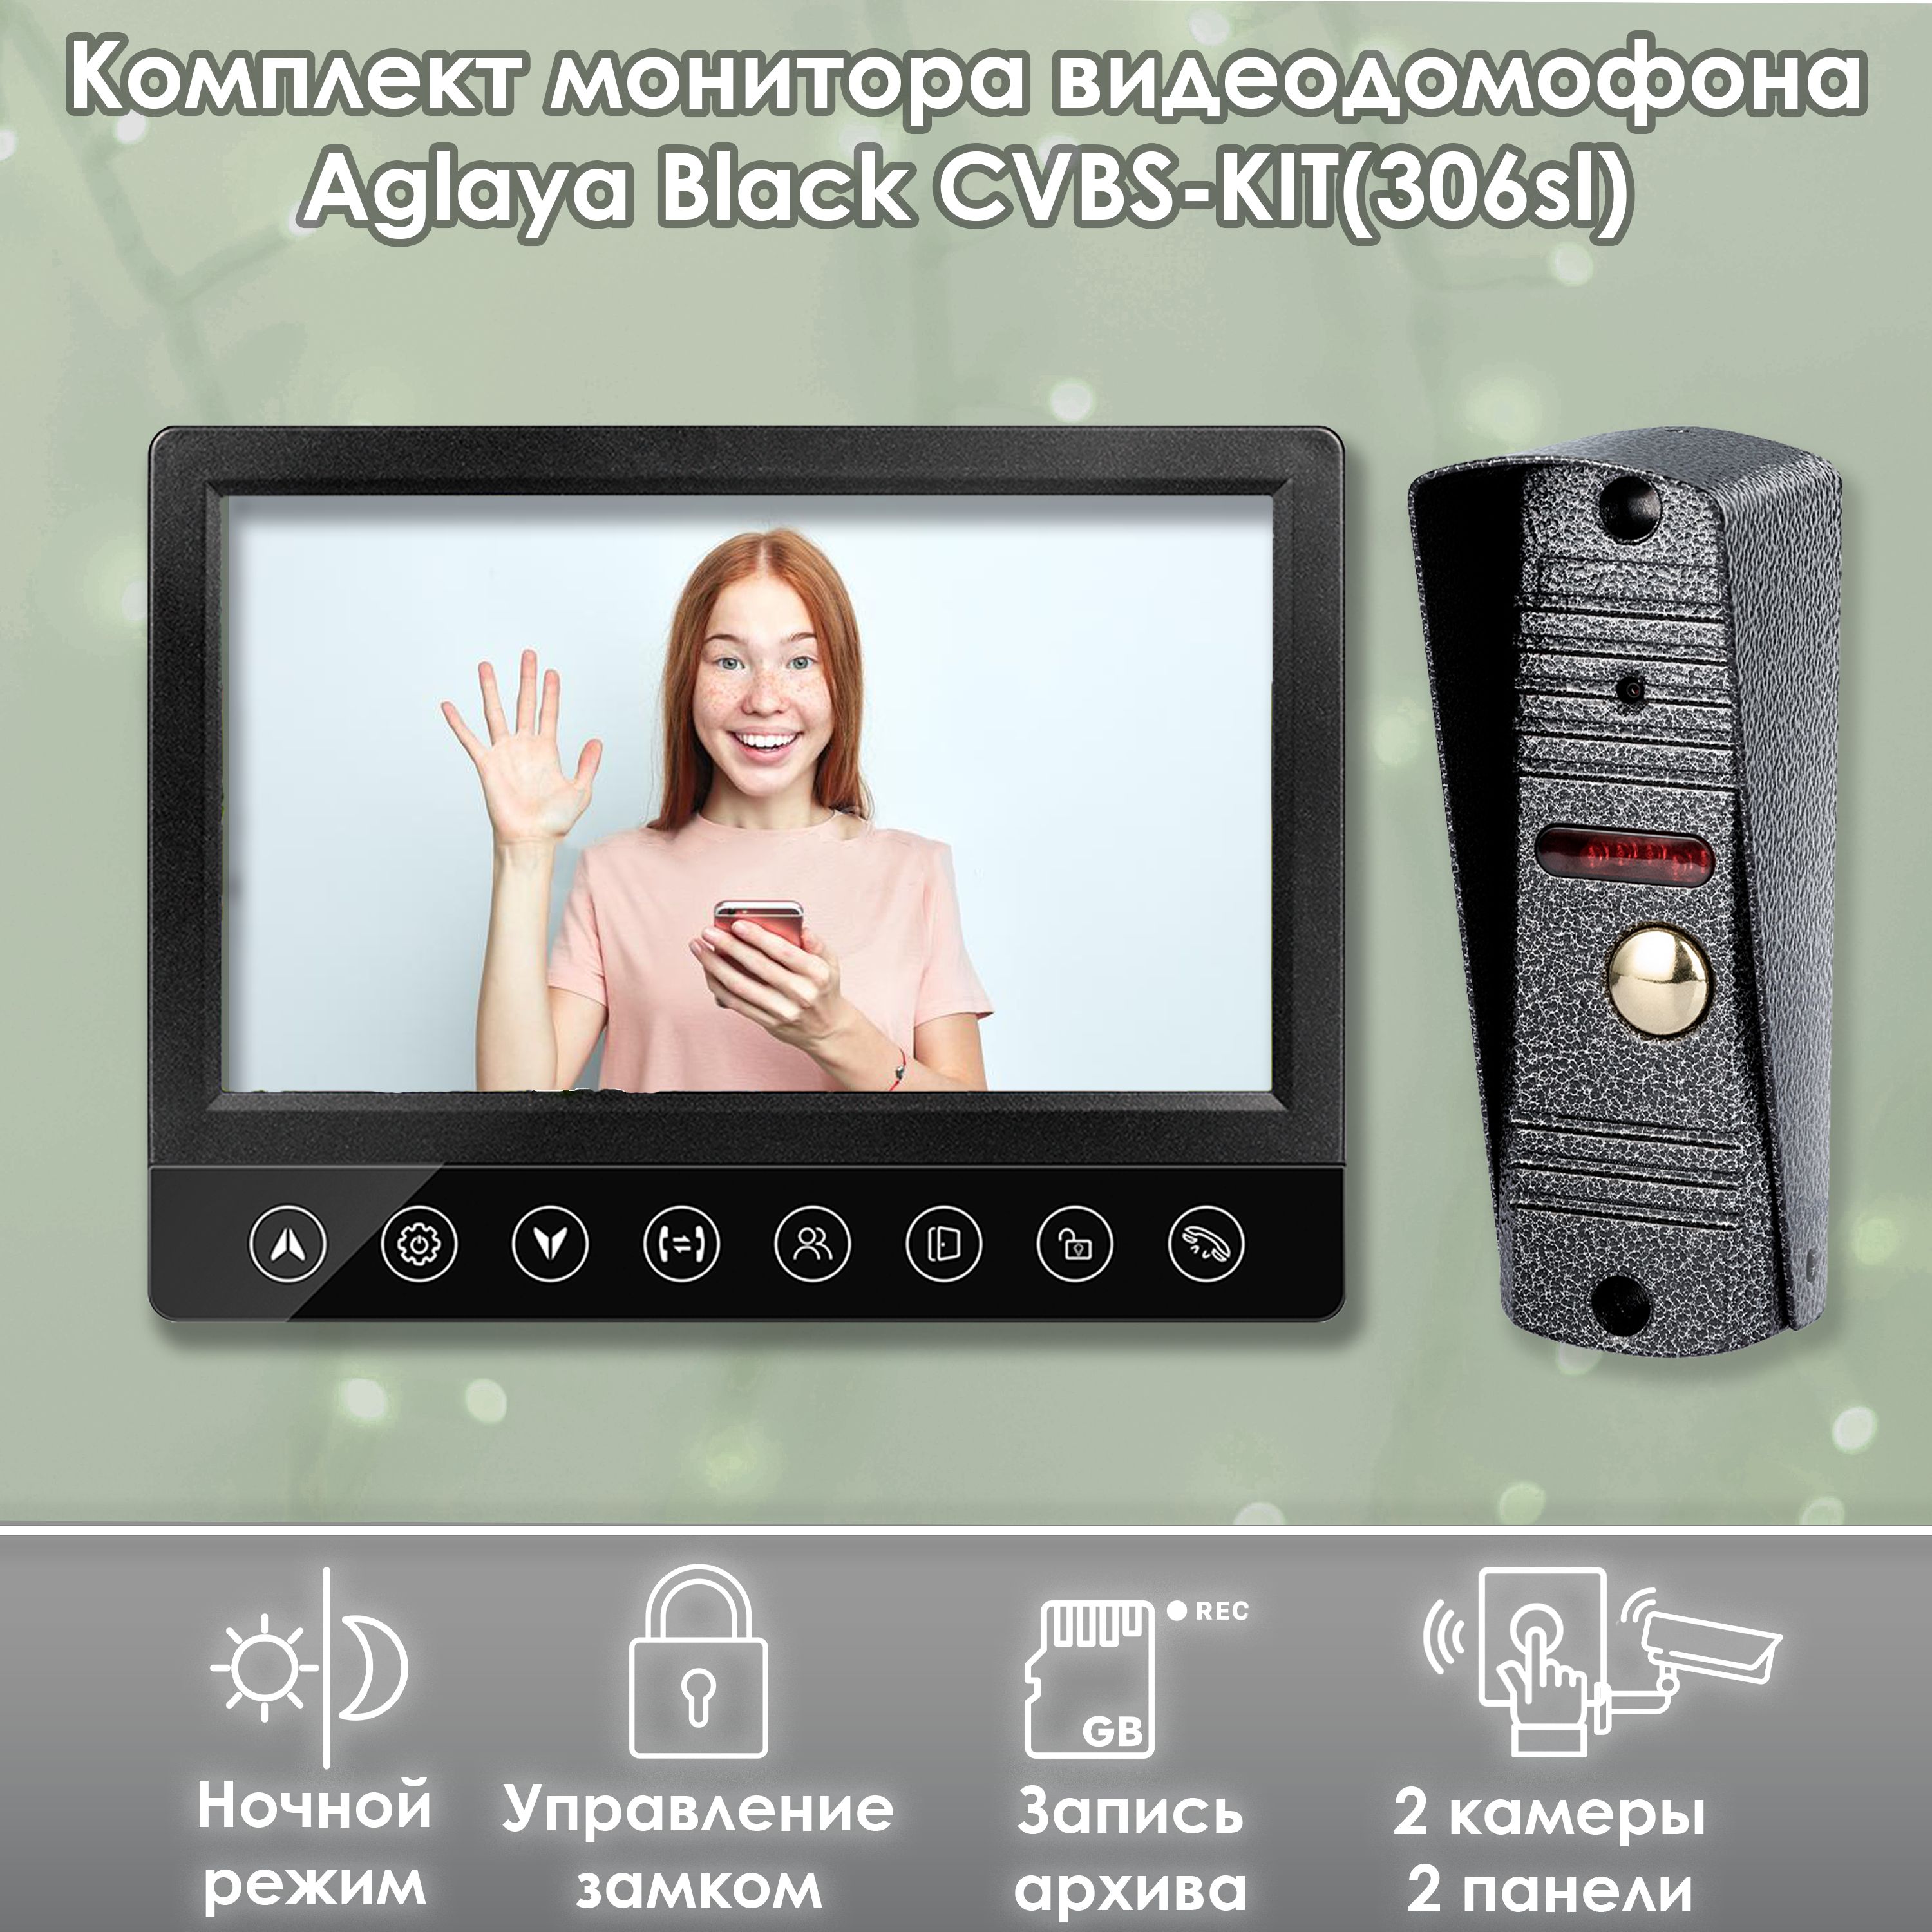 Комплект монитора видеодомофона Aglaya CVBS Black KIT (306sl), 7 дюймов комплект видеонаблюдения цифровой santrin комплект ahd tvi cvi cvbs 1 камера купольная